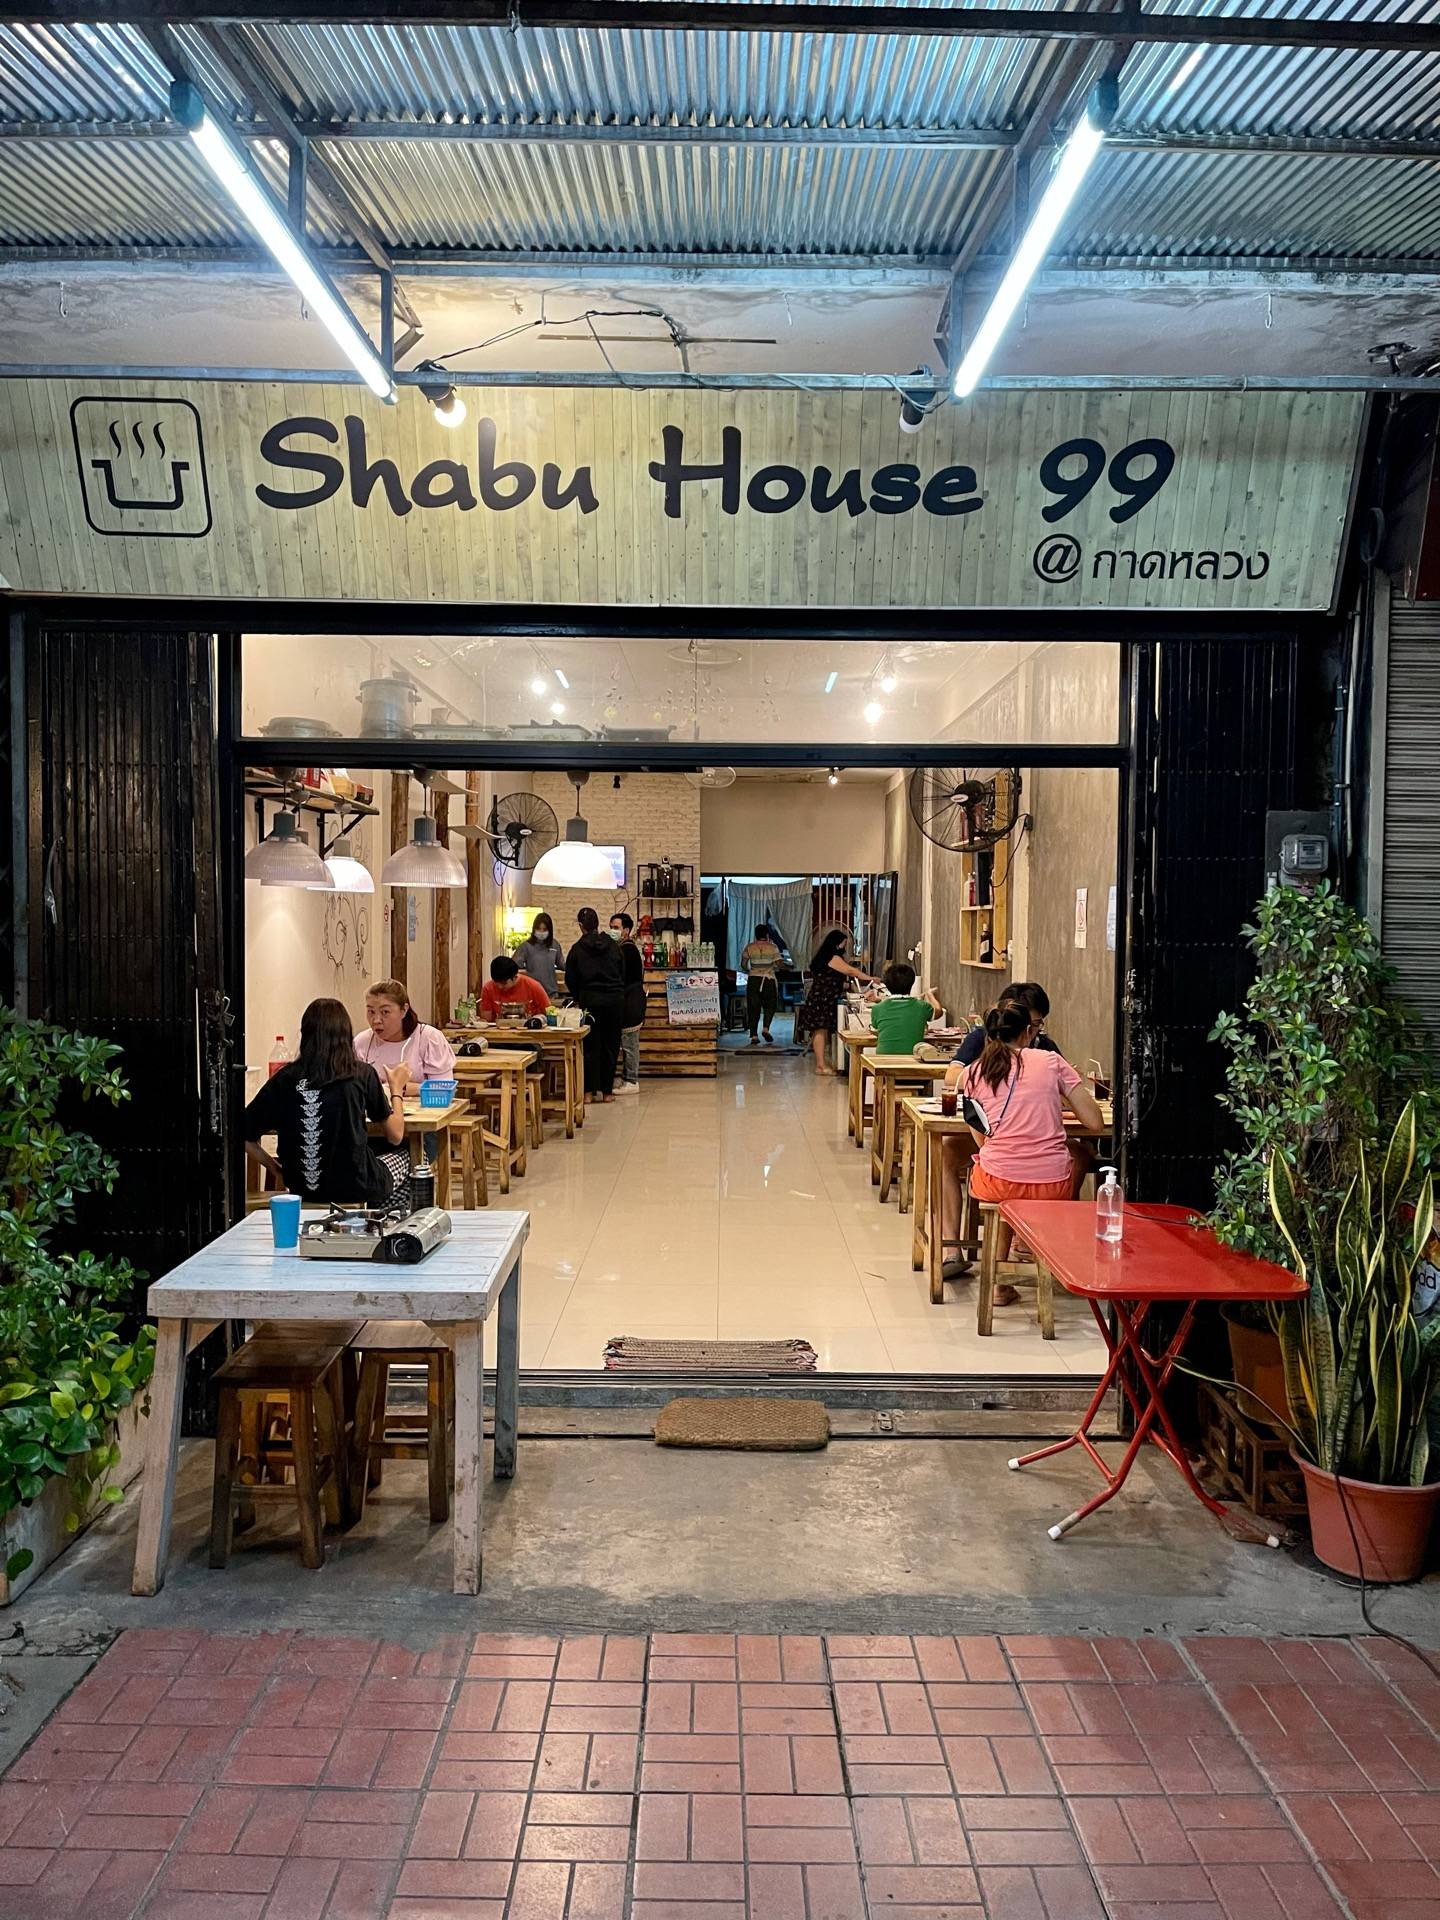 Shabu House99